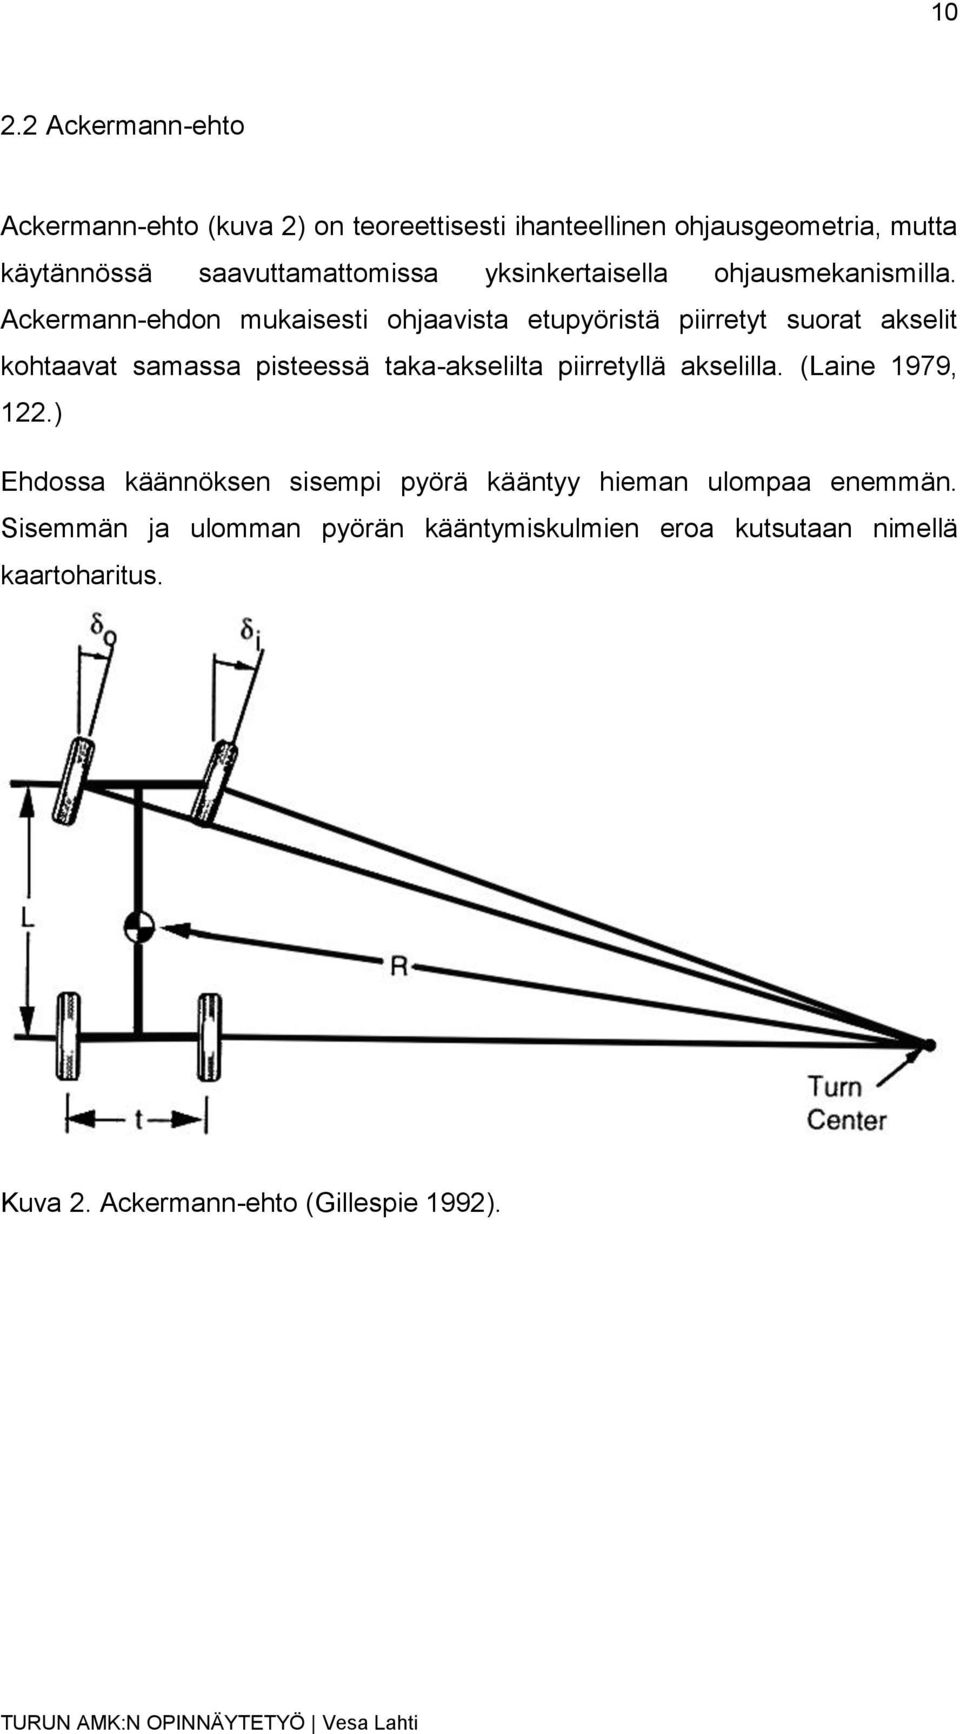 Ackermann-ehdon mukaisesti ohjaavista etupyöristä piirretyt suorat akselit kohtaavat samassa pisteessä taka-akselilta